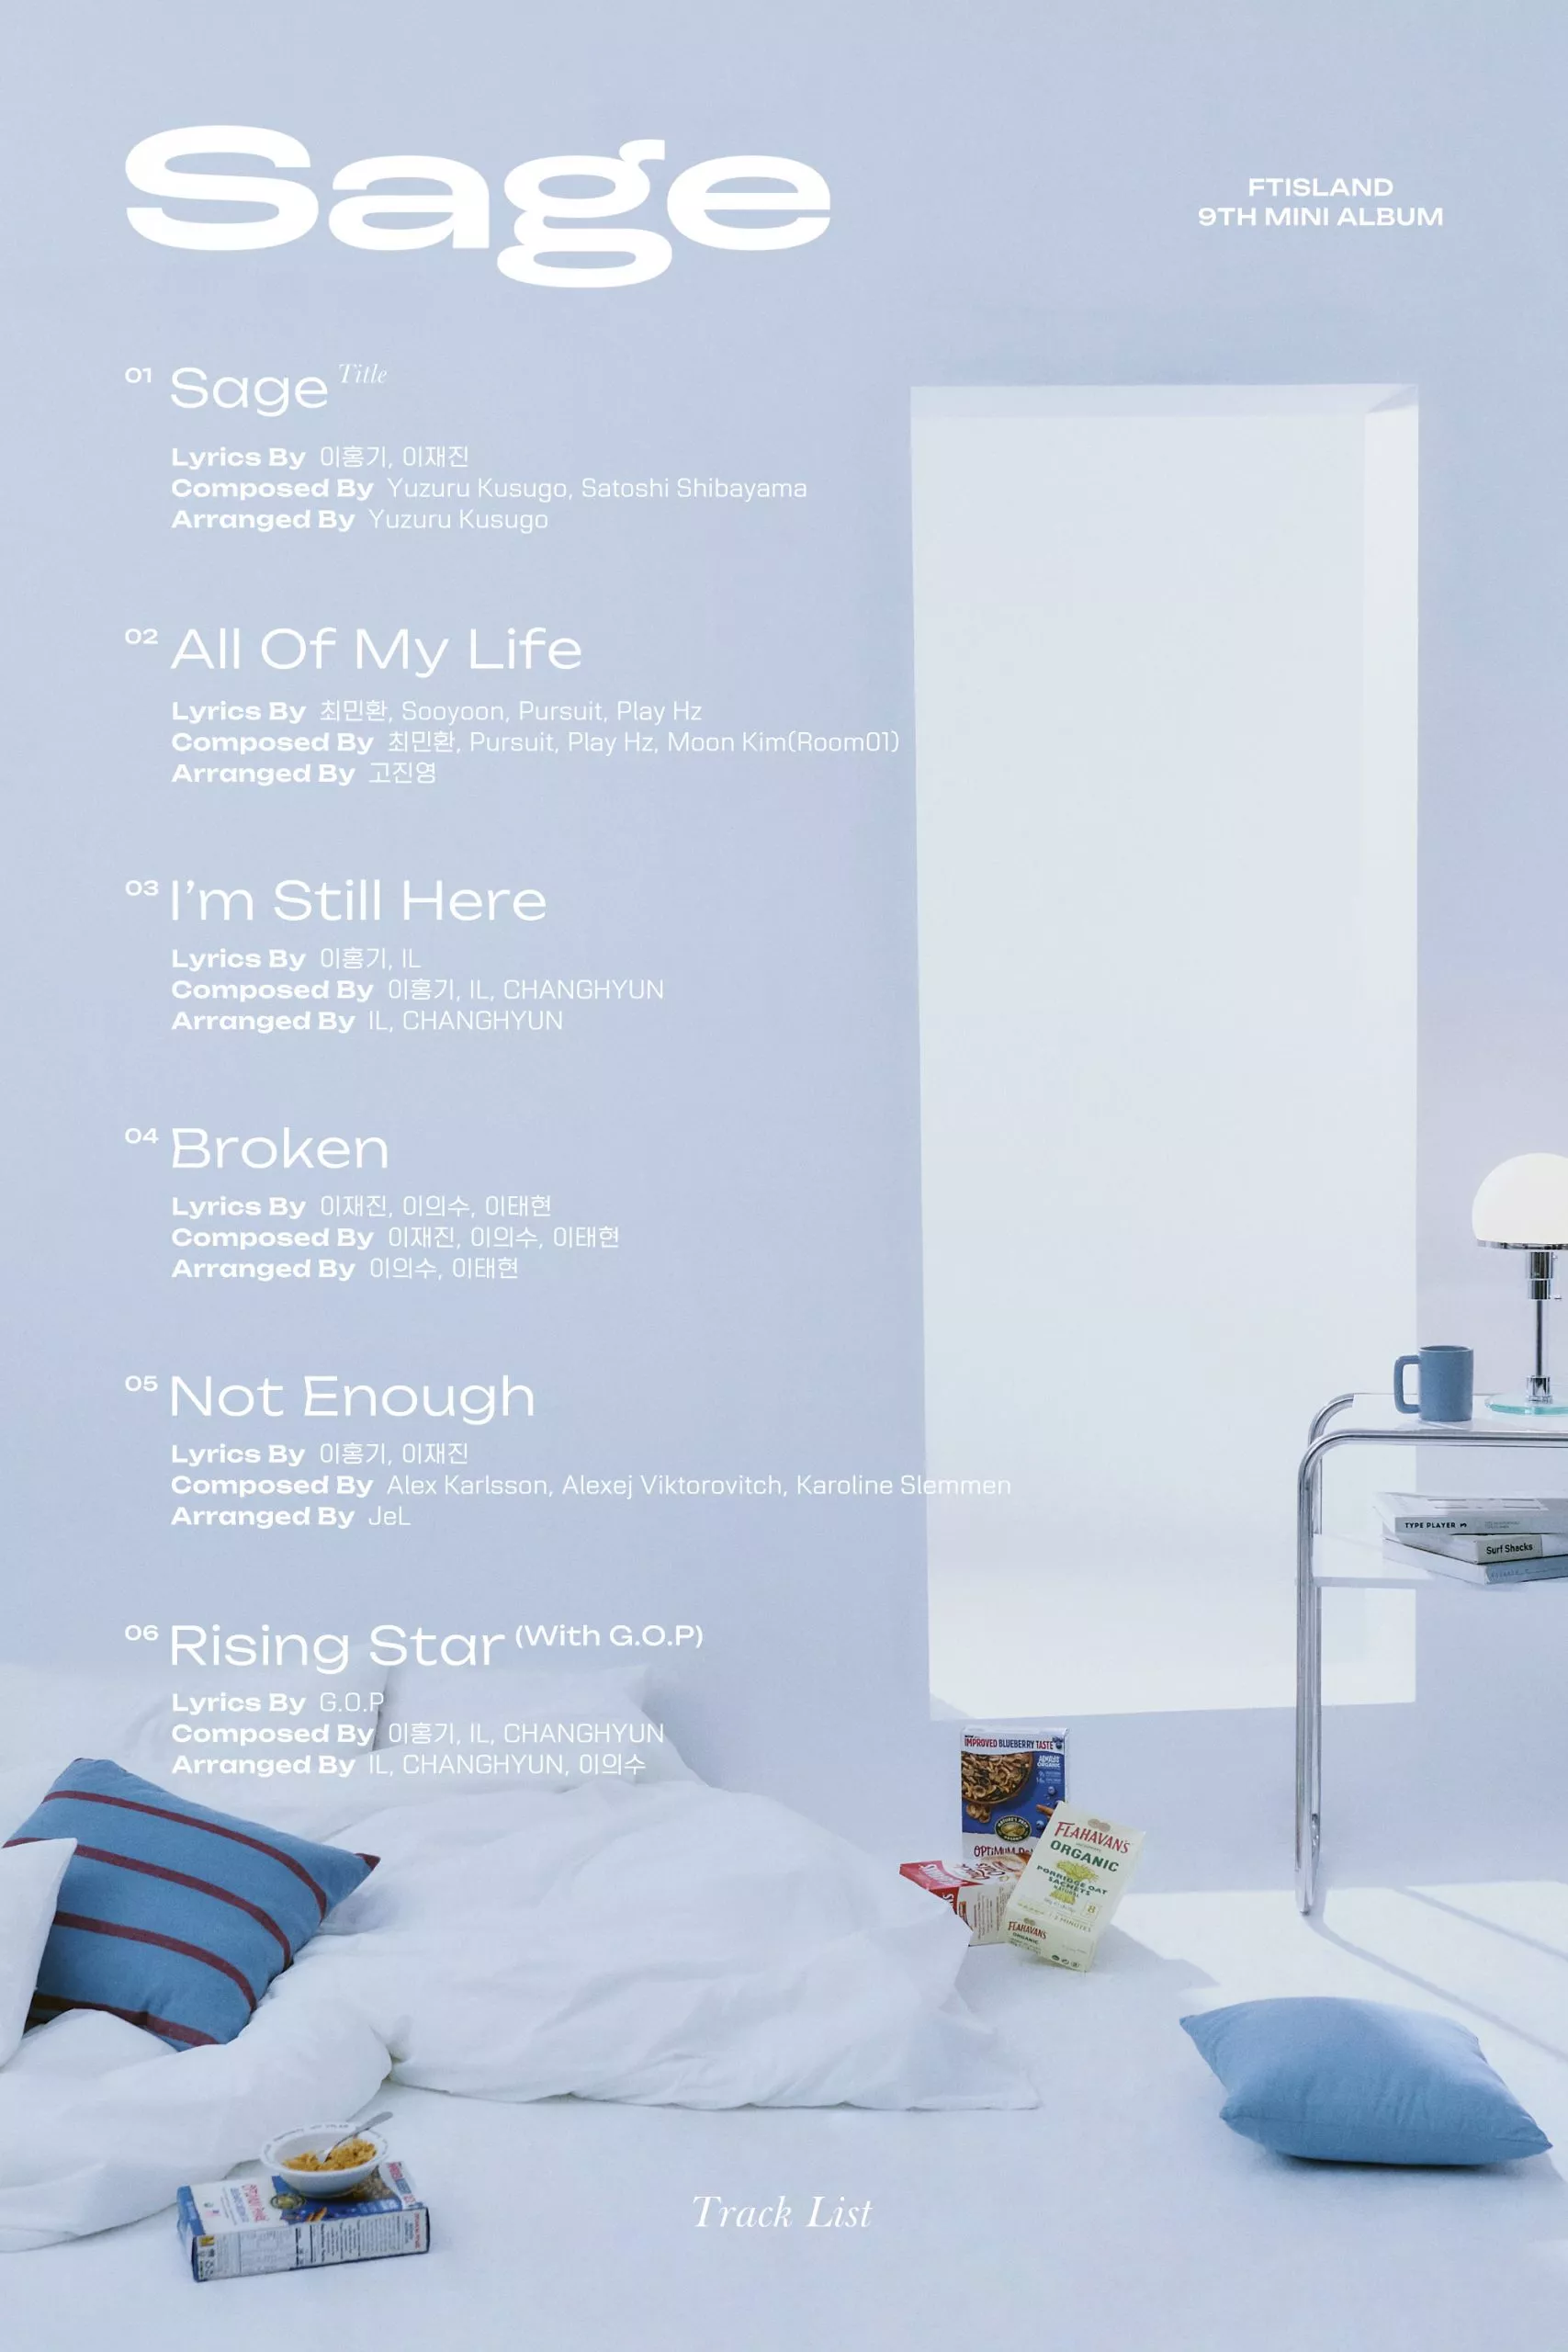 FTISLAND представили официальный трек-лист девятого мини-альбома "Sage"